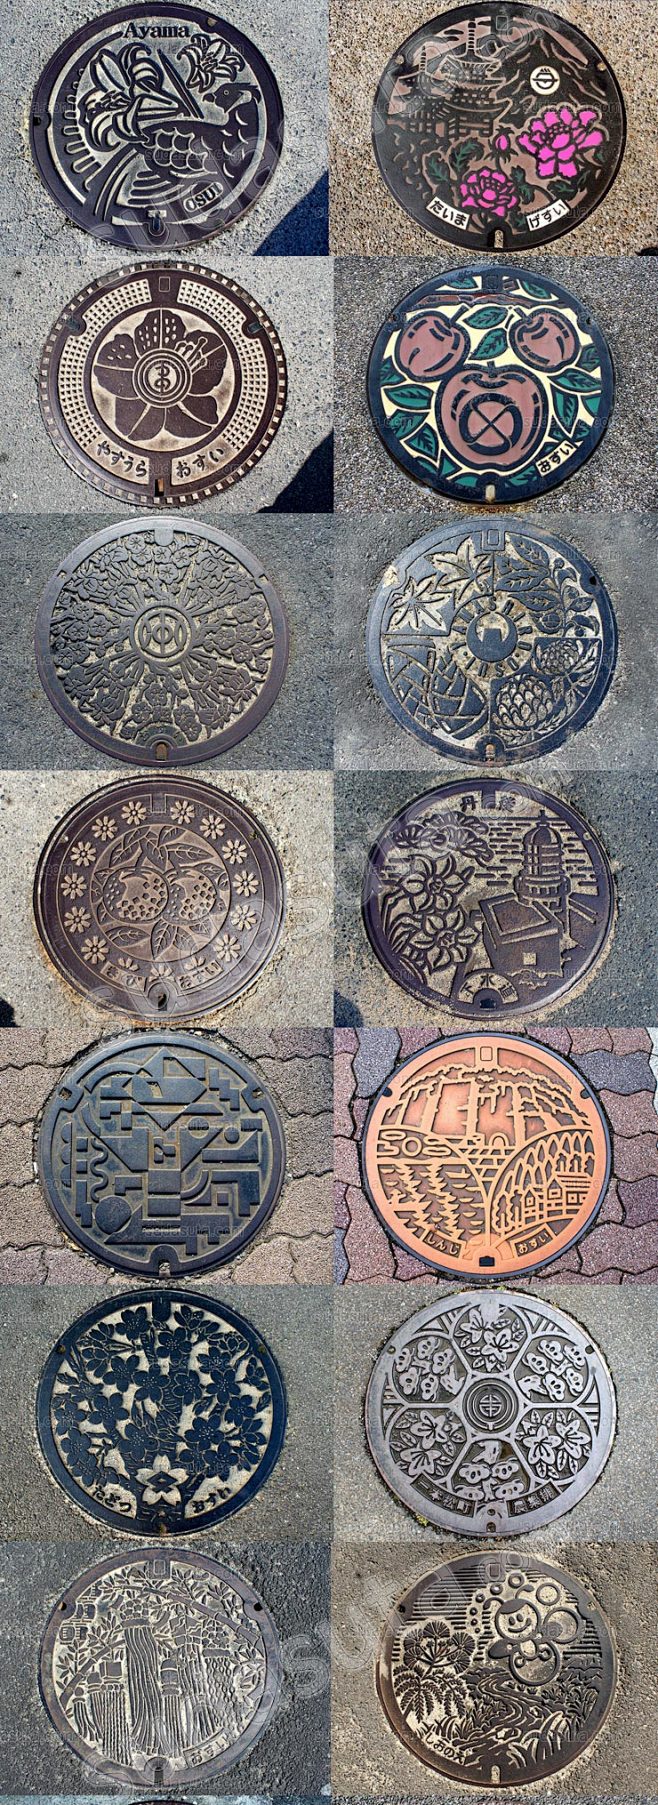 560张日本的窨井盖设计图片manholecover日式街头手绘井盖摄影淘宝网